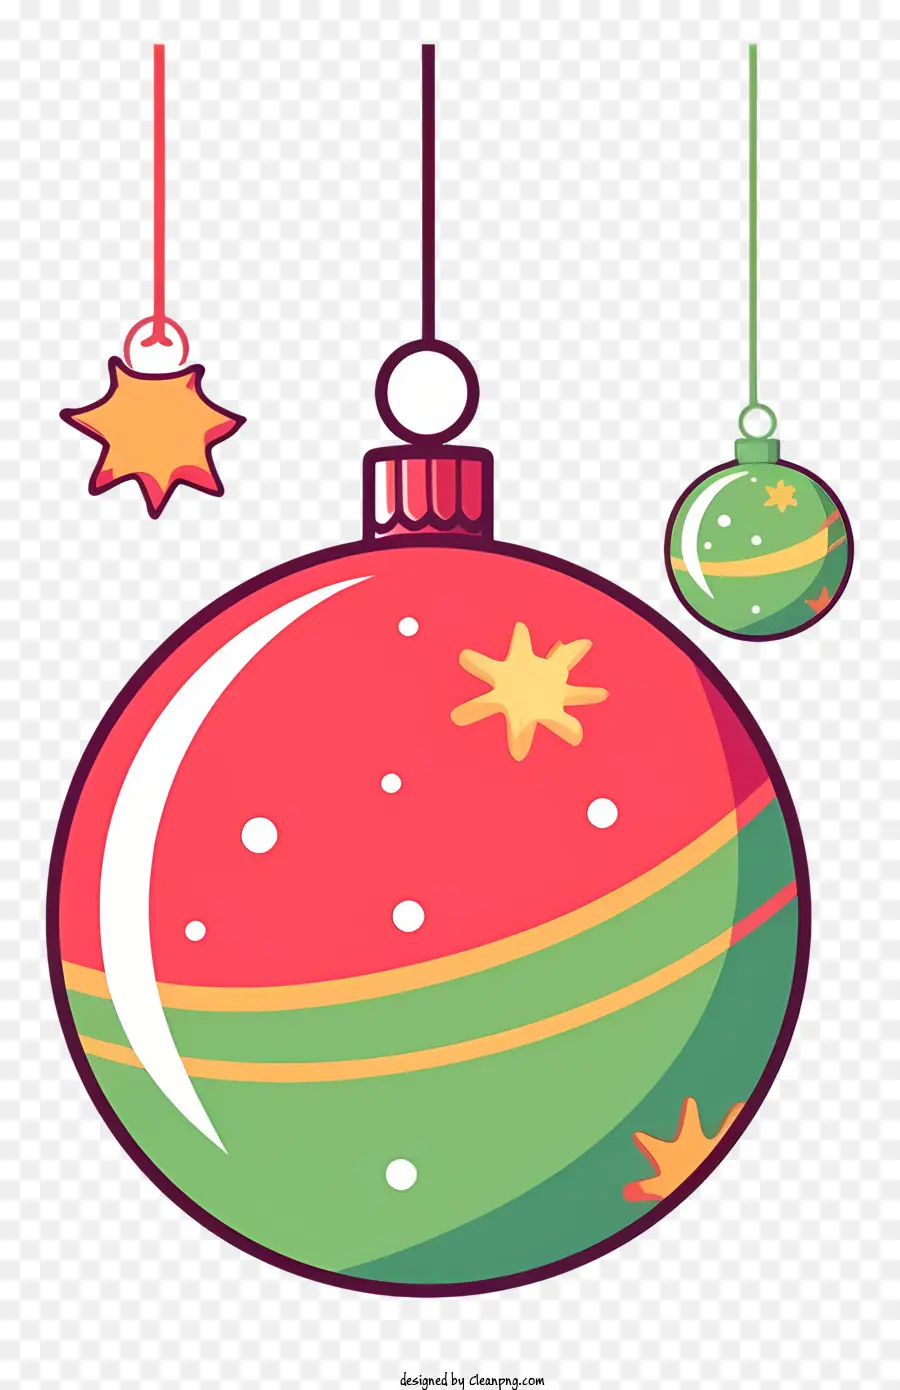 Oggetto decorativo colorato Ornamento natalizio in plastica Ornamento rosso e verde Schema di colori Decorazione a stella Ornamento sospeso - Ornamento di Natale colorato di plastica appeso con la stella